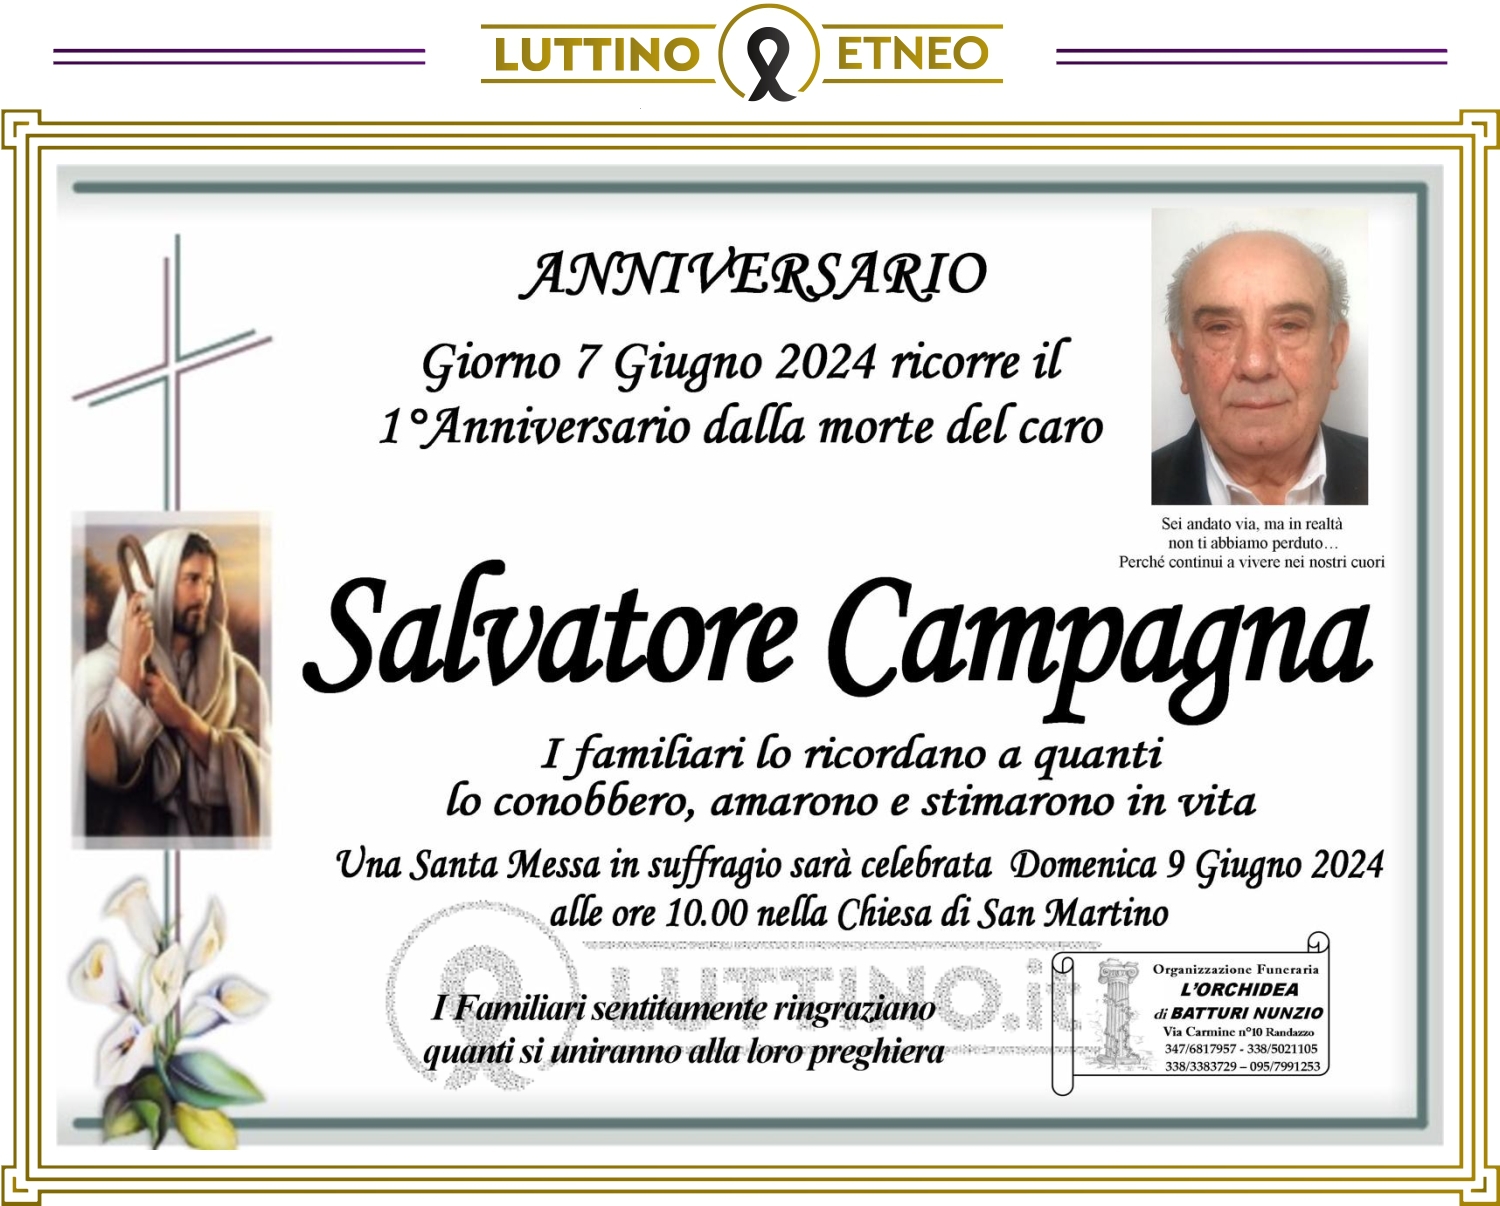 Salvatore Campagna